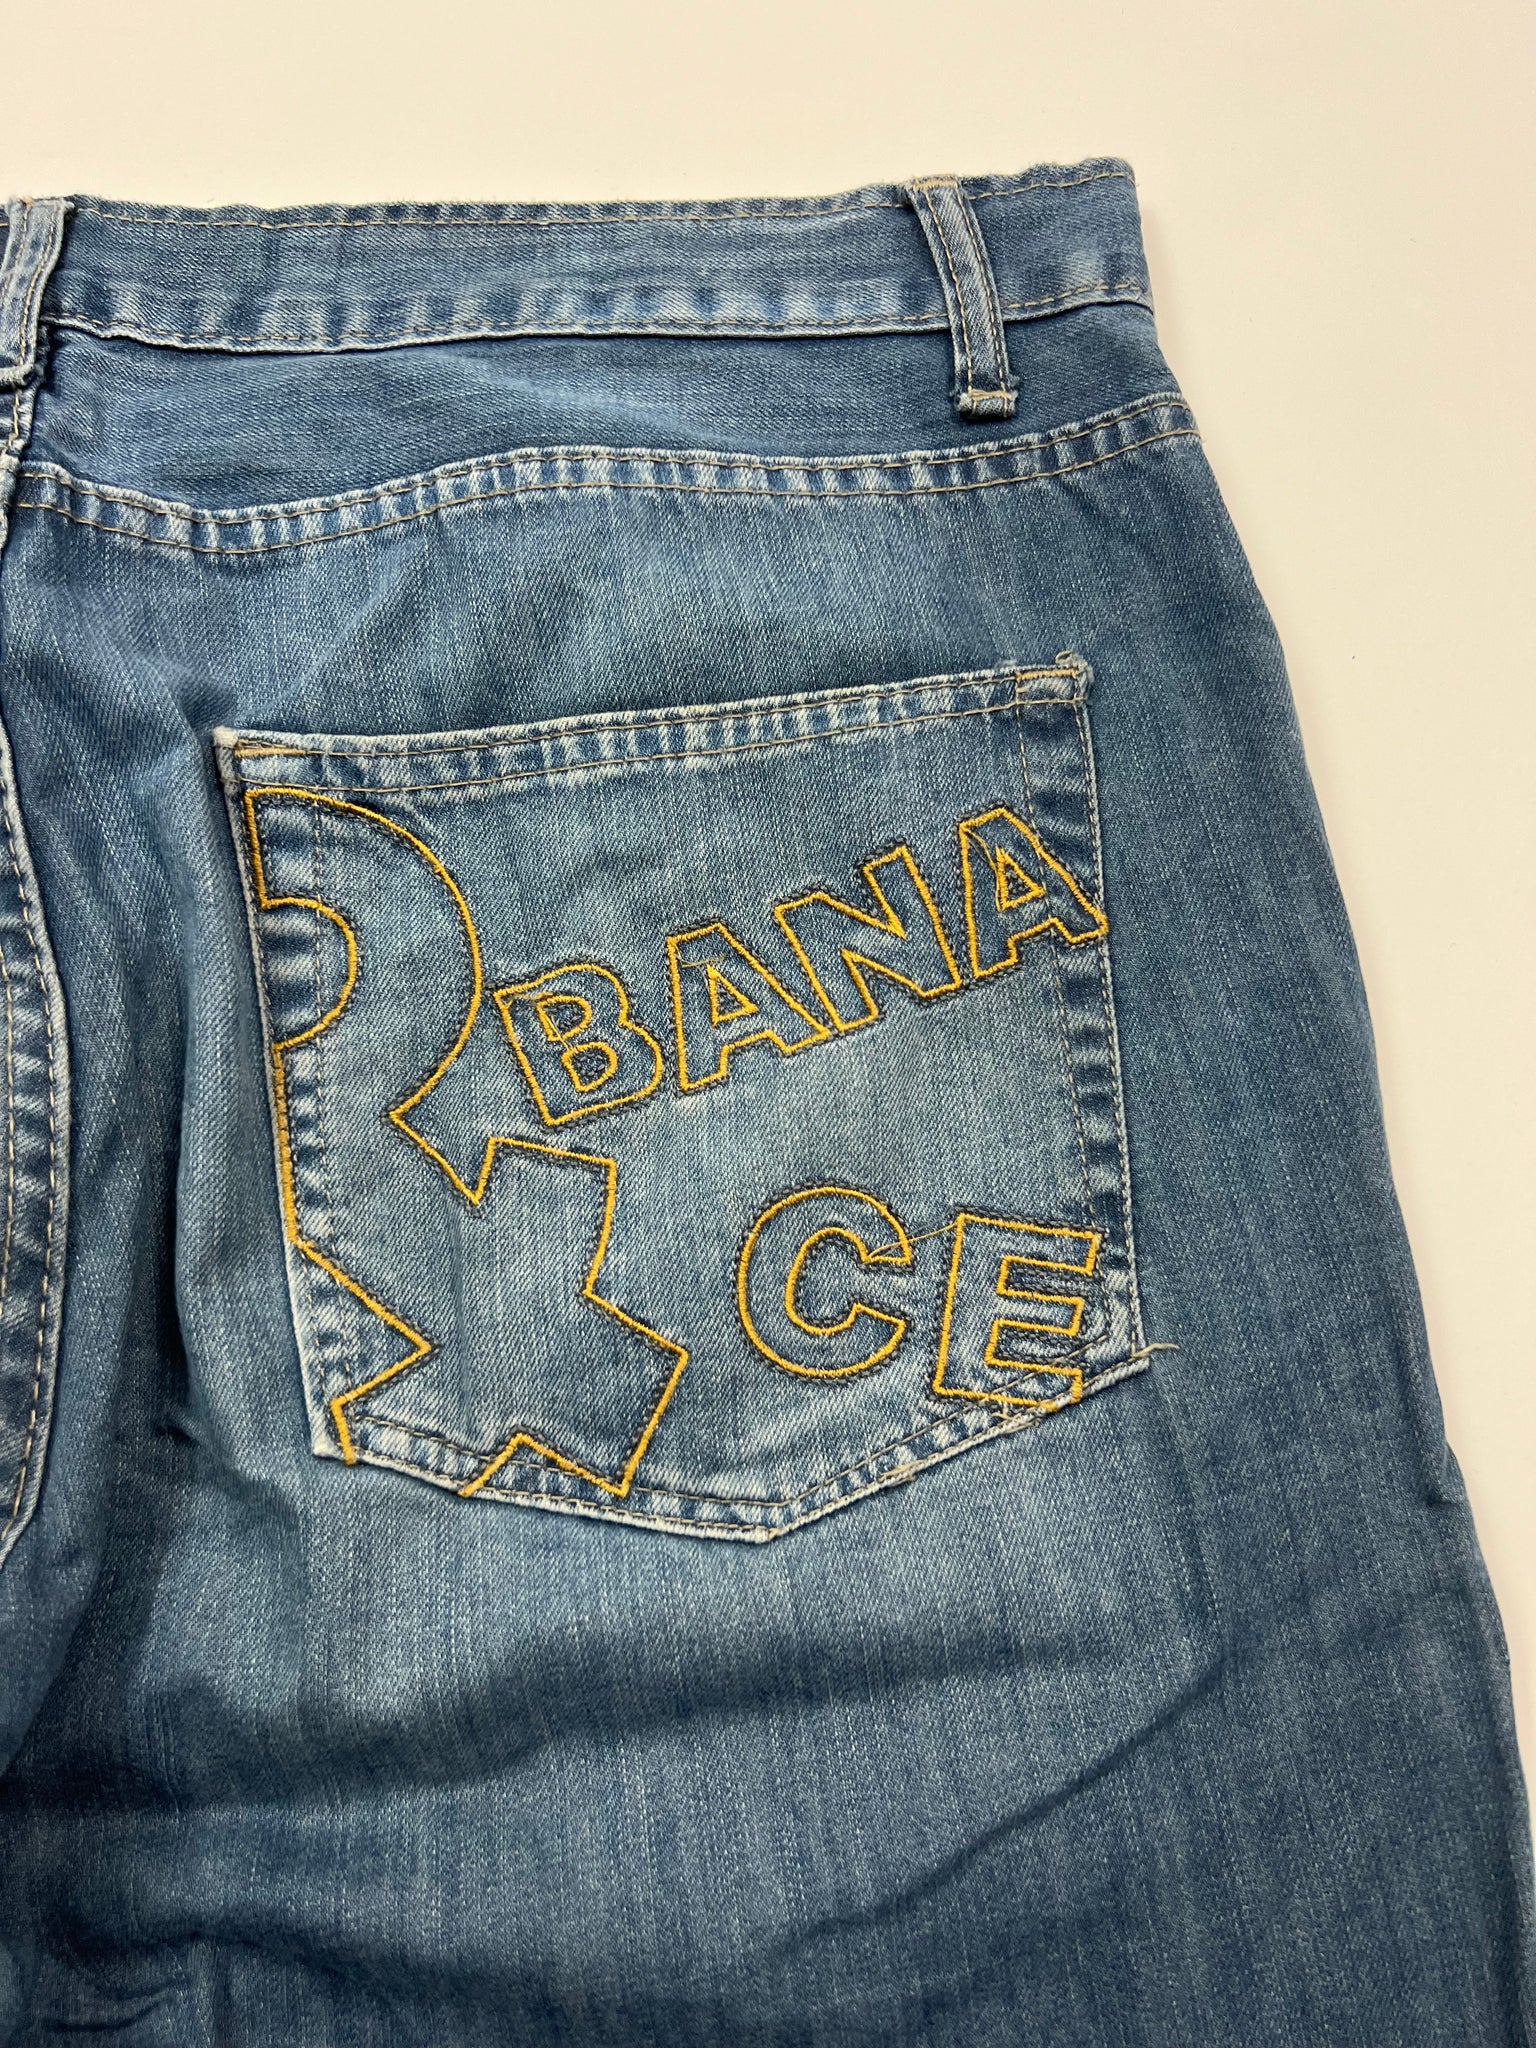 Dolce & Gabbana Jeans (36)